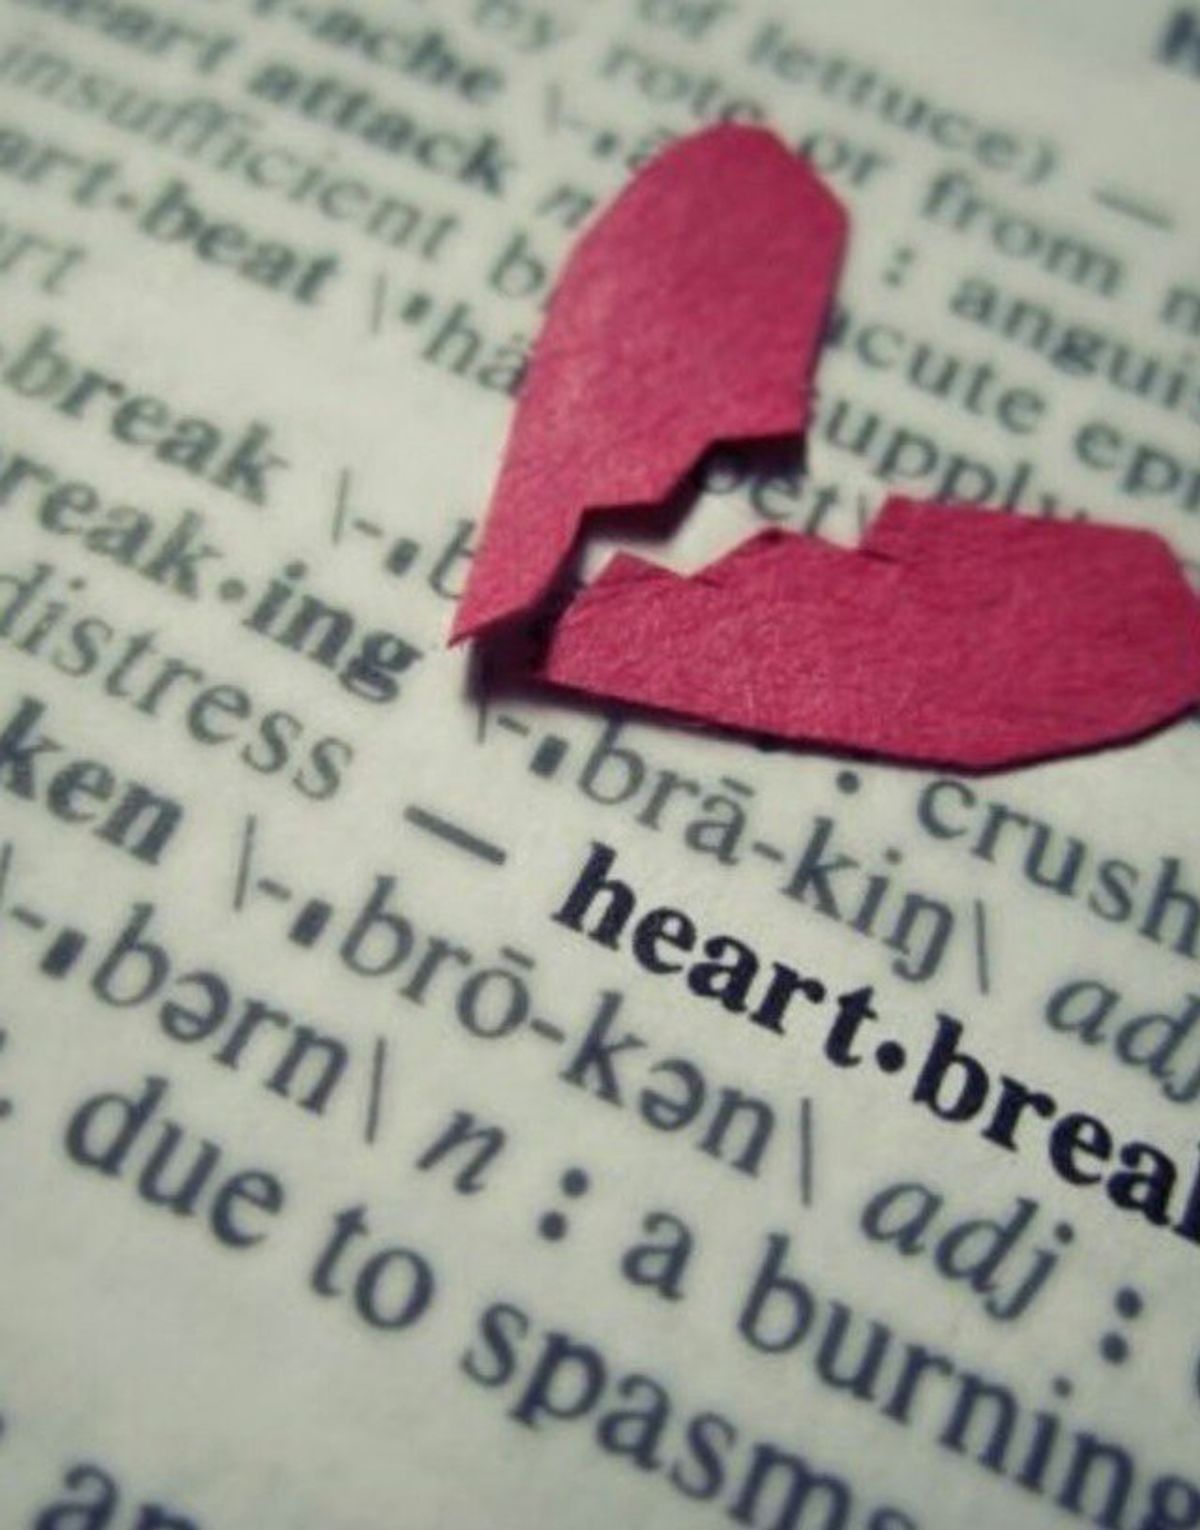 Heartbreak: The Dirty Word